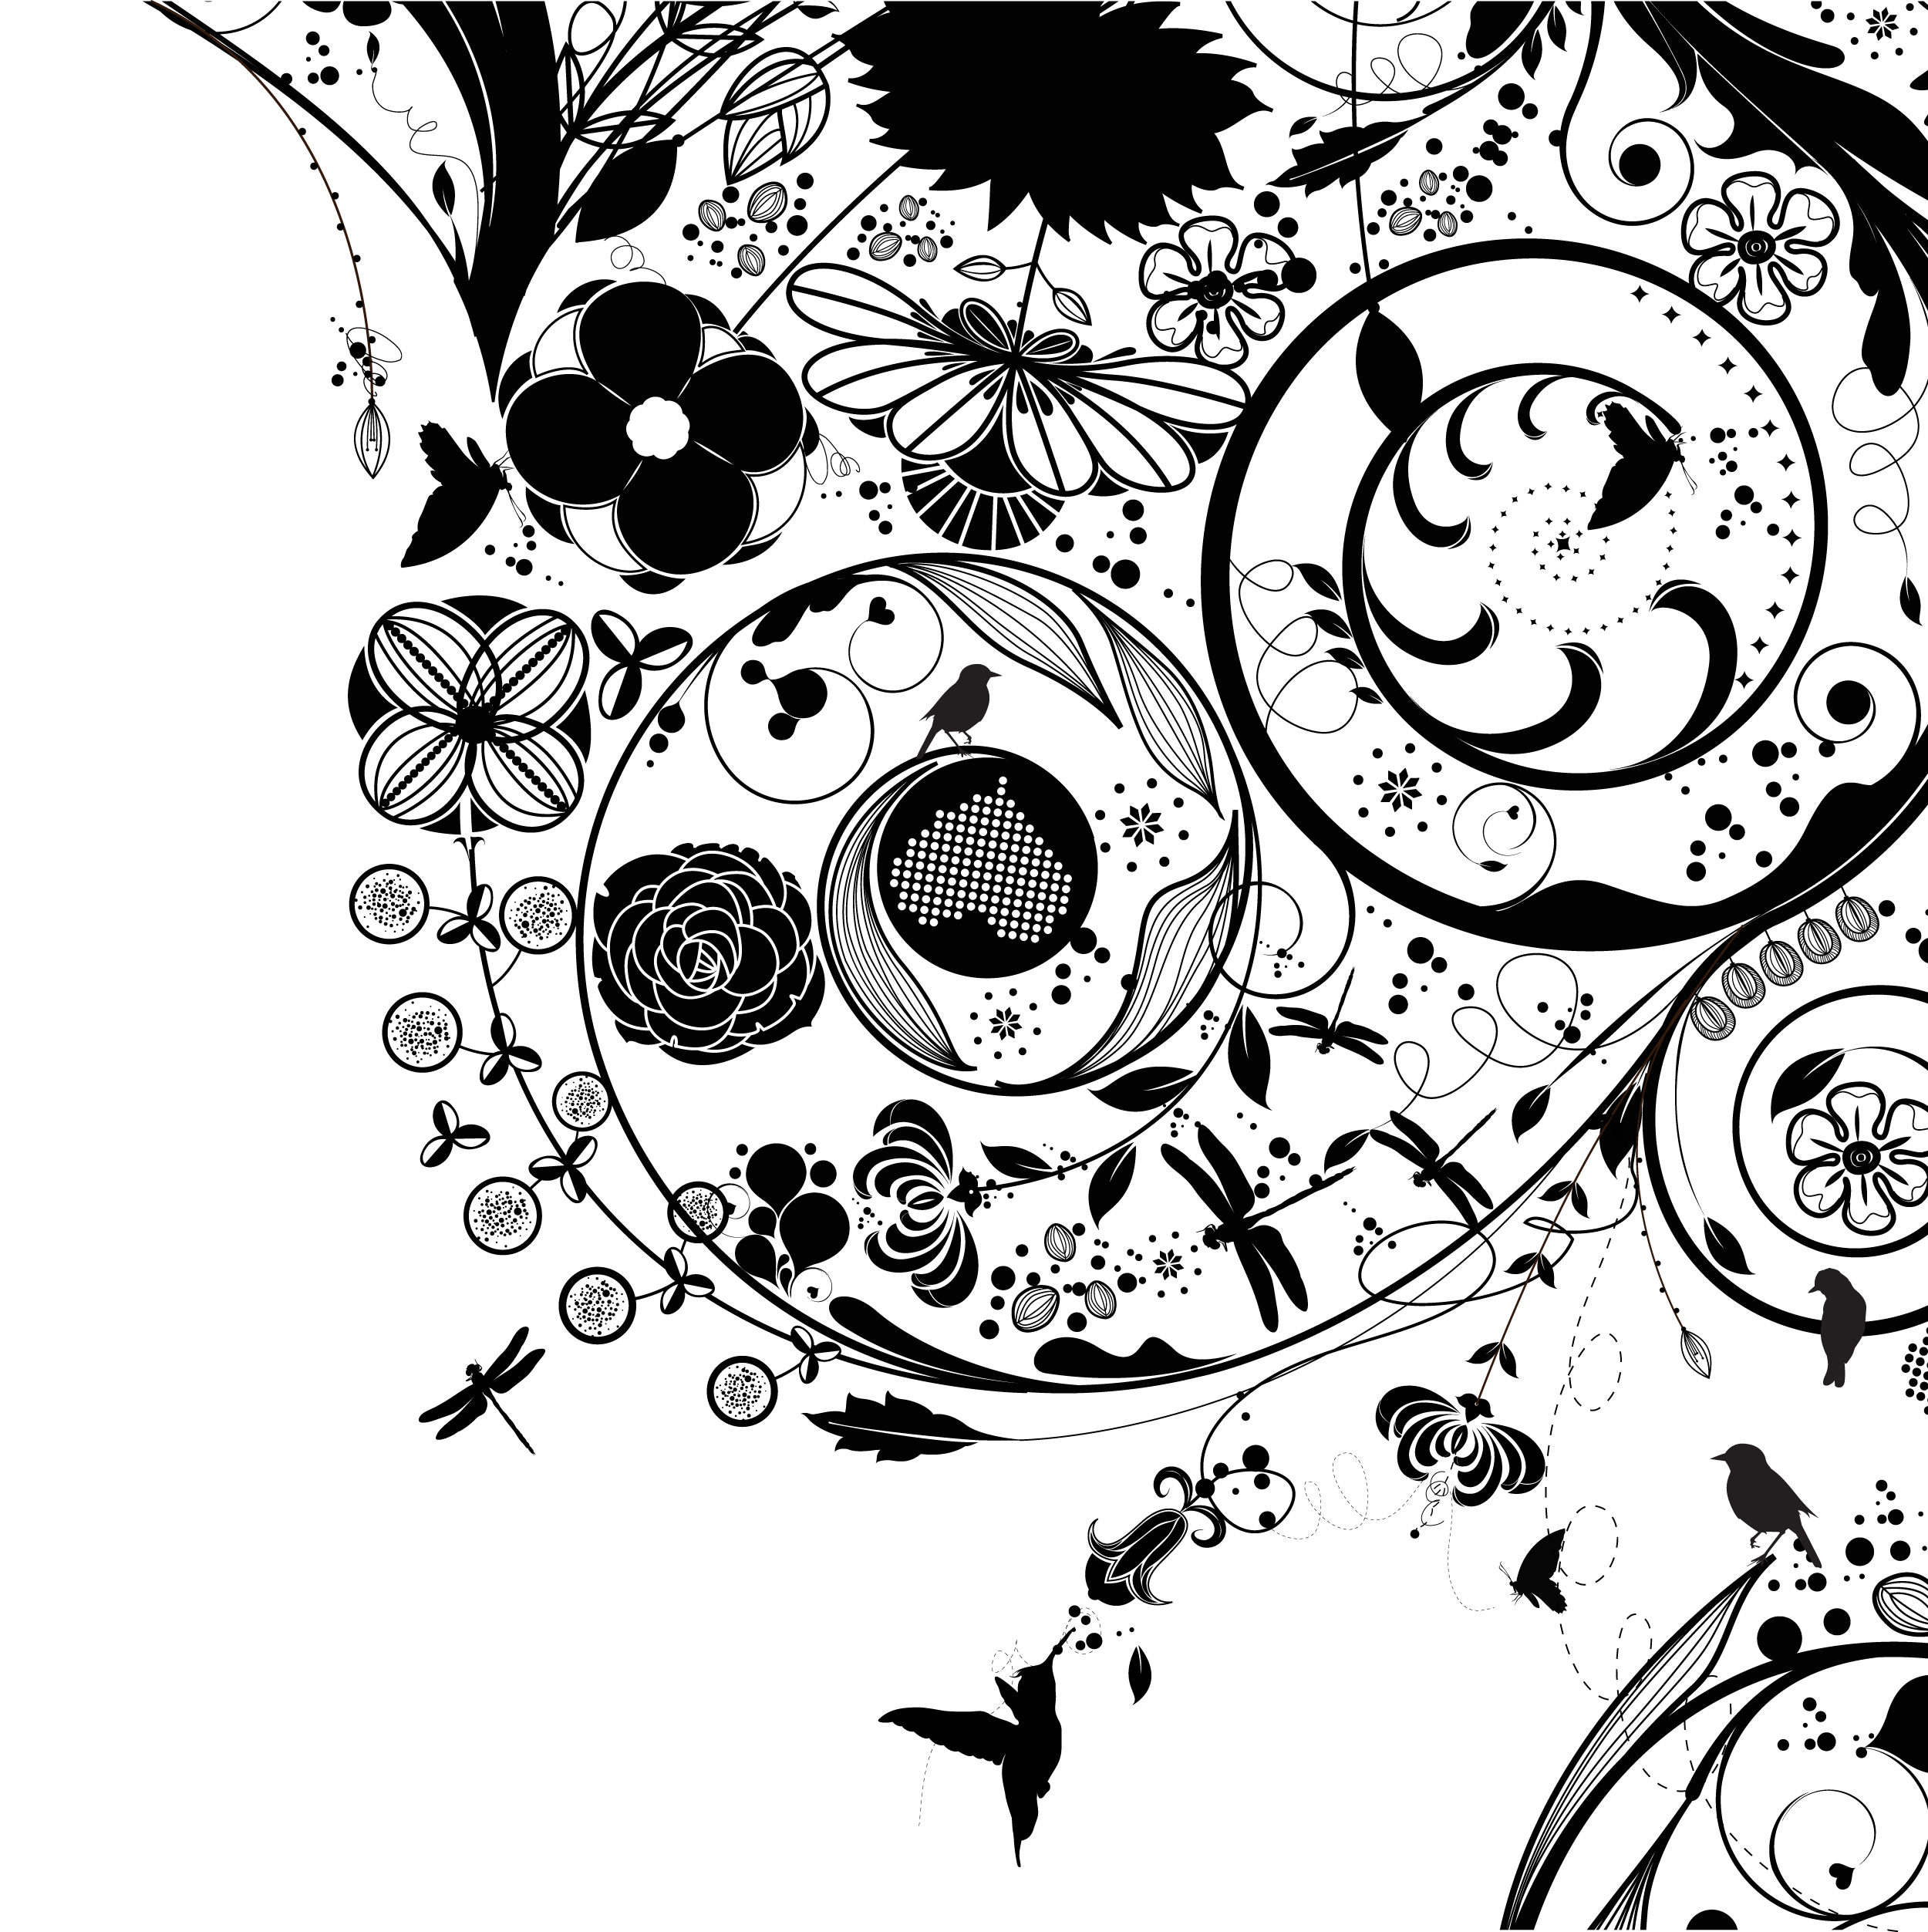 花のイラスト フリー素材 壁紙 背景no 5 白黒 渦巻き状 鳥